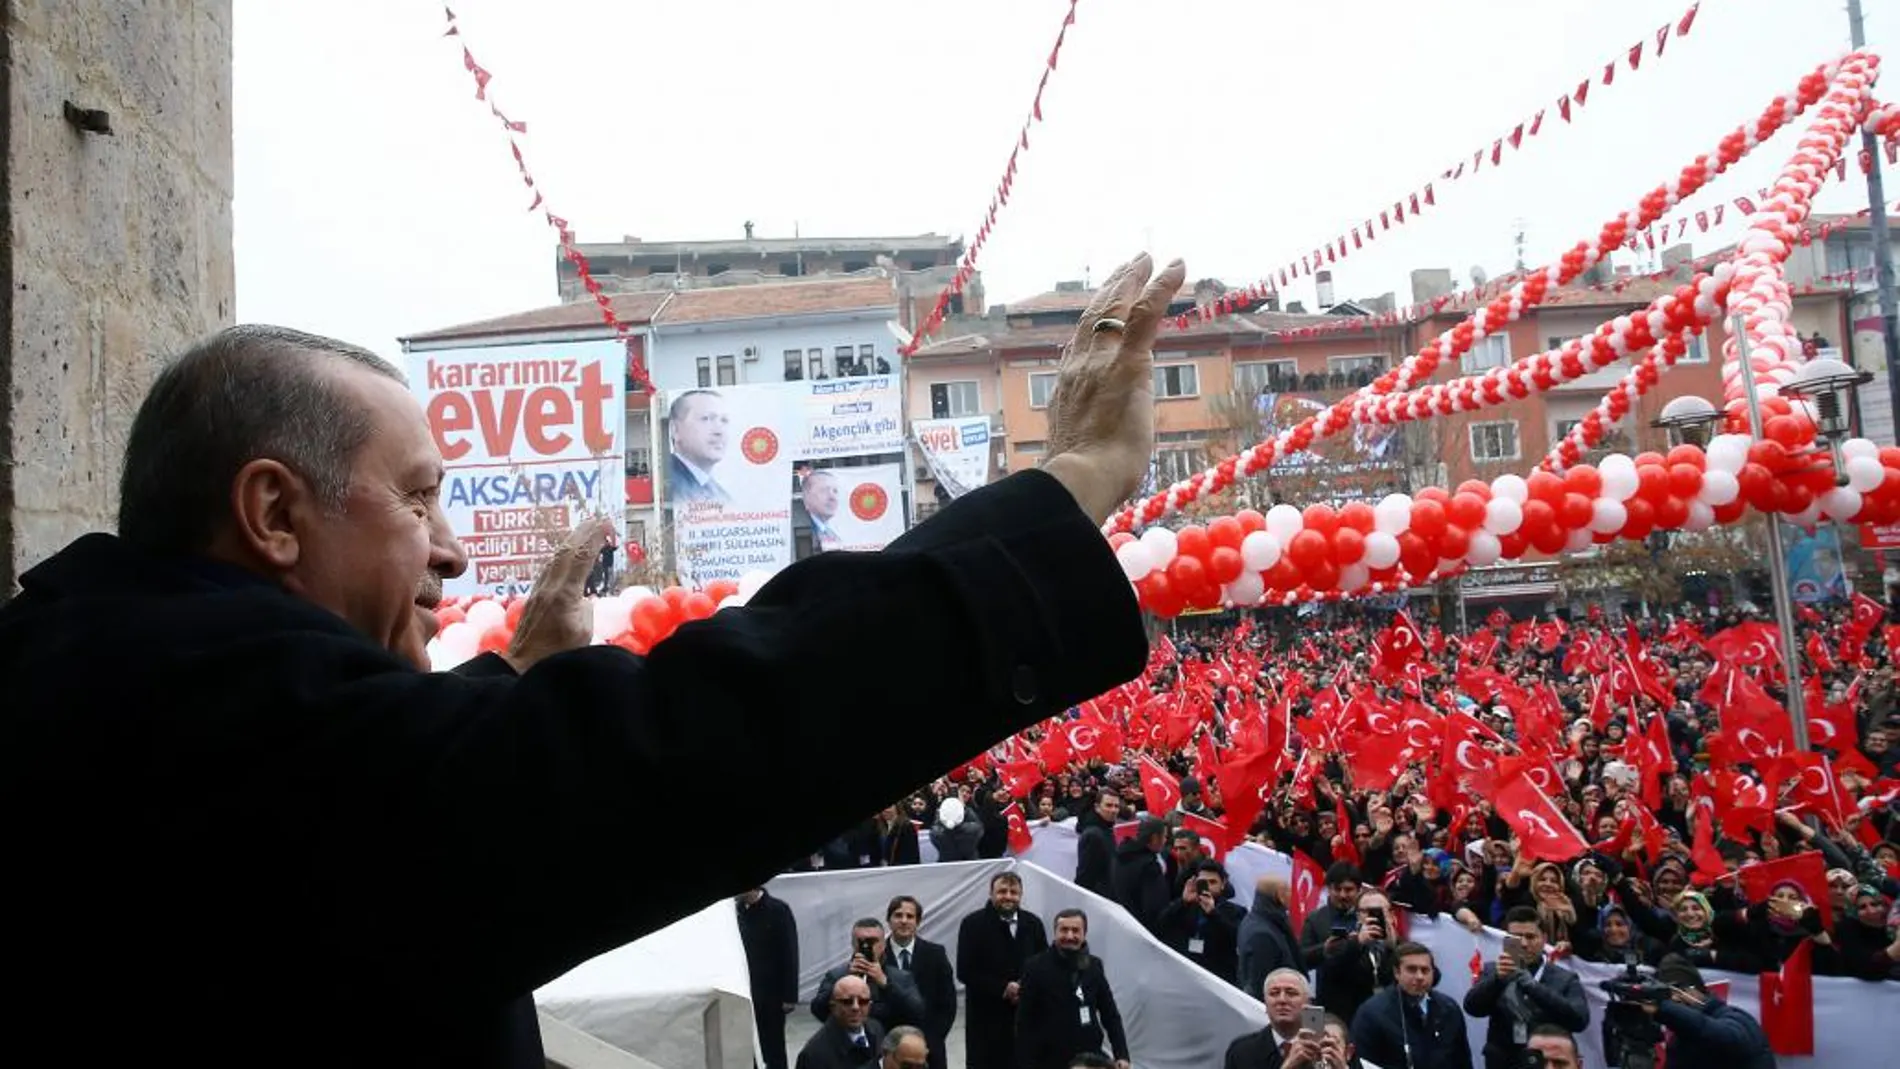 Recep Tayyip Erdogan en una ceremonia en Aksaray